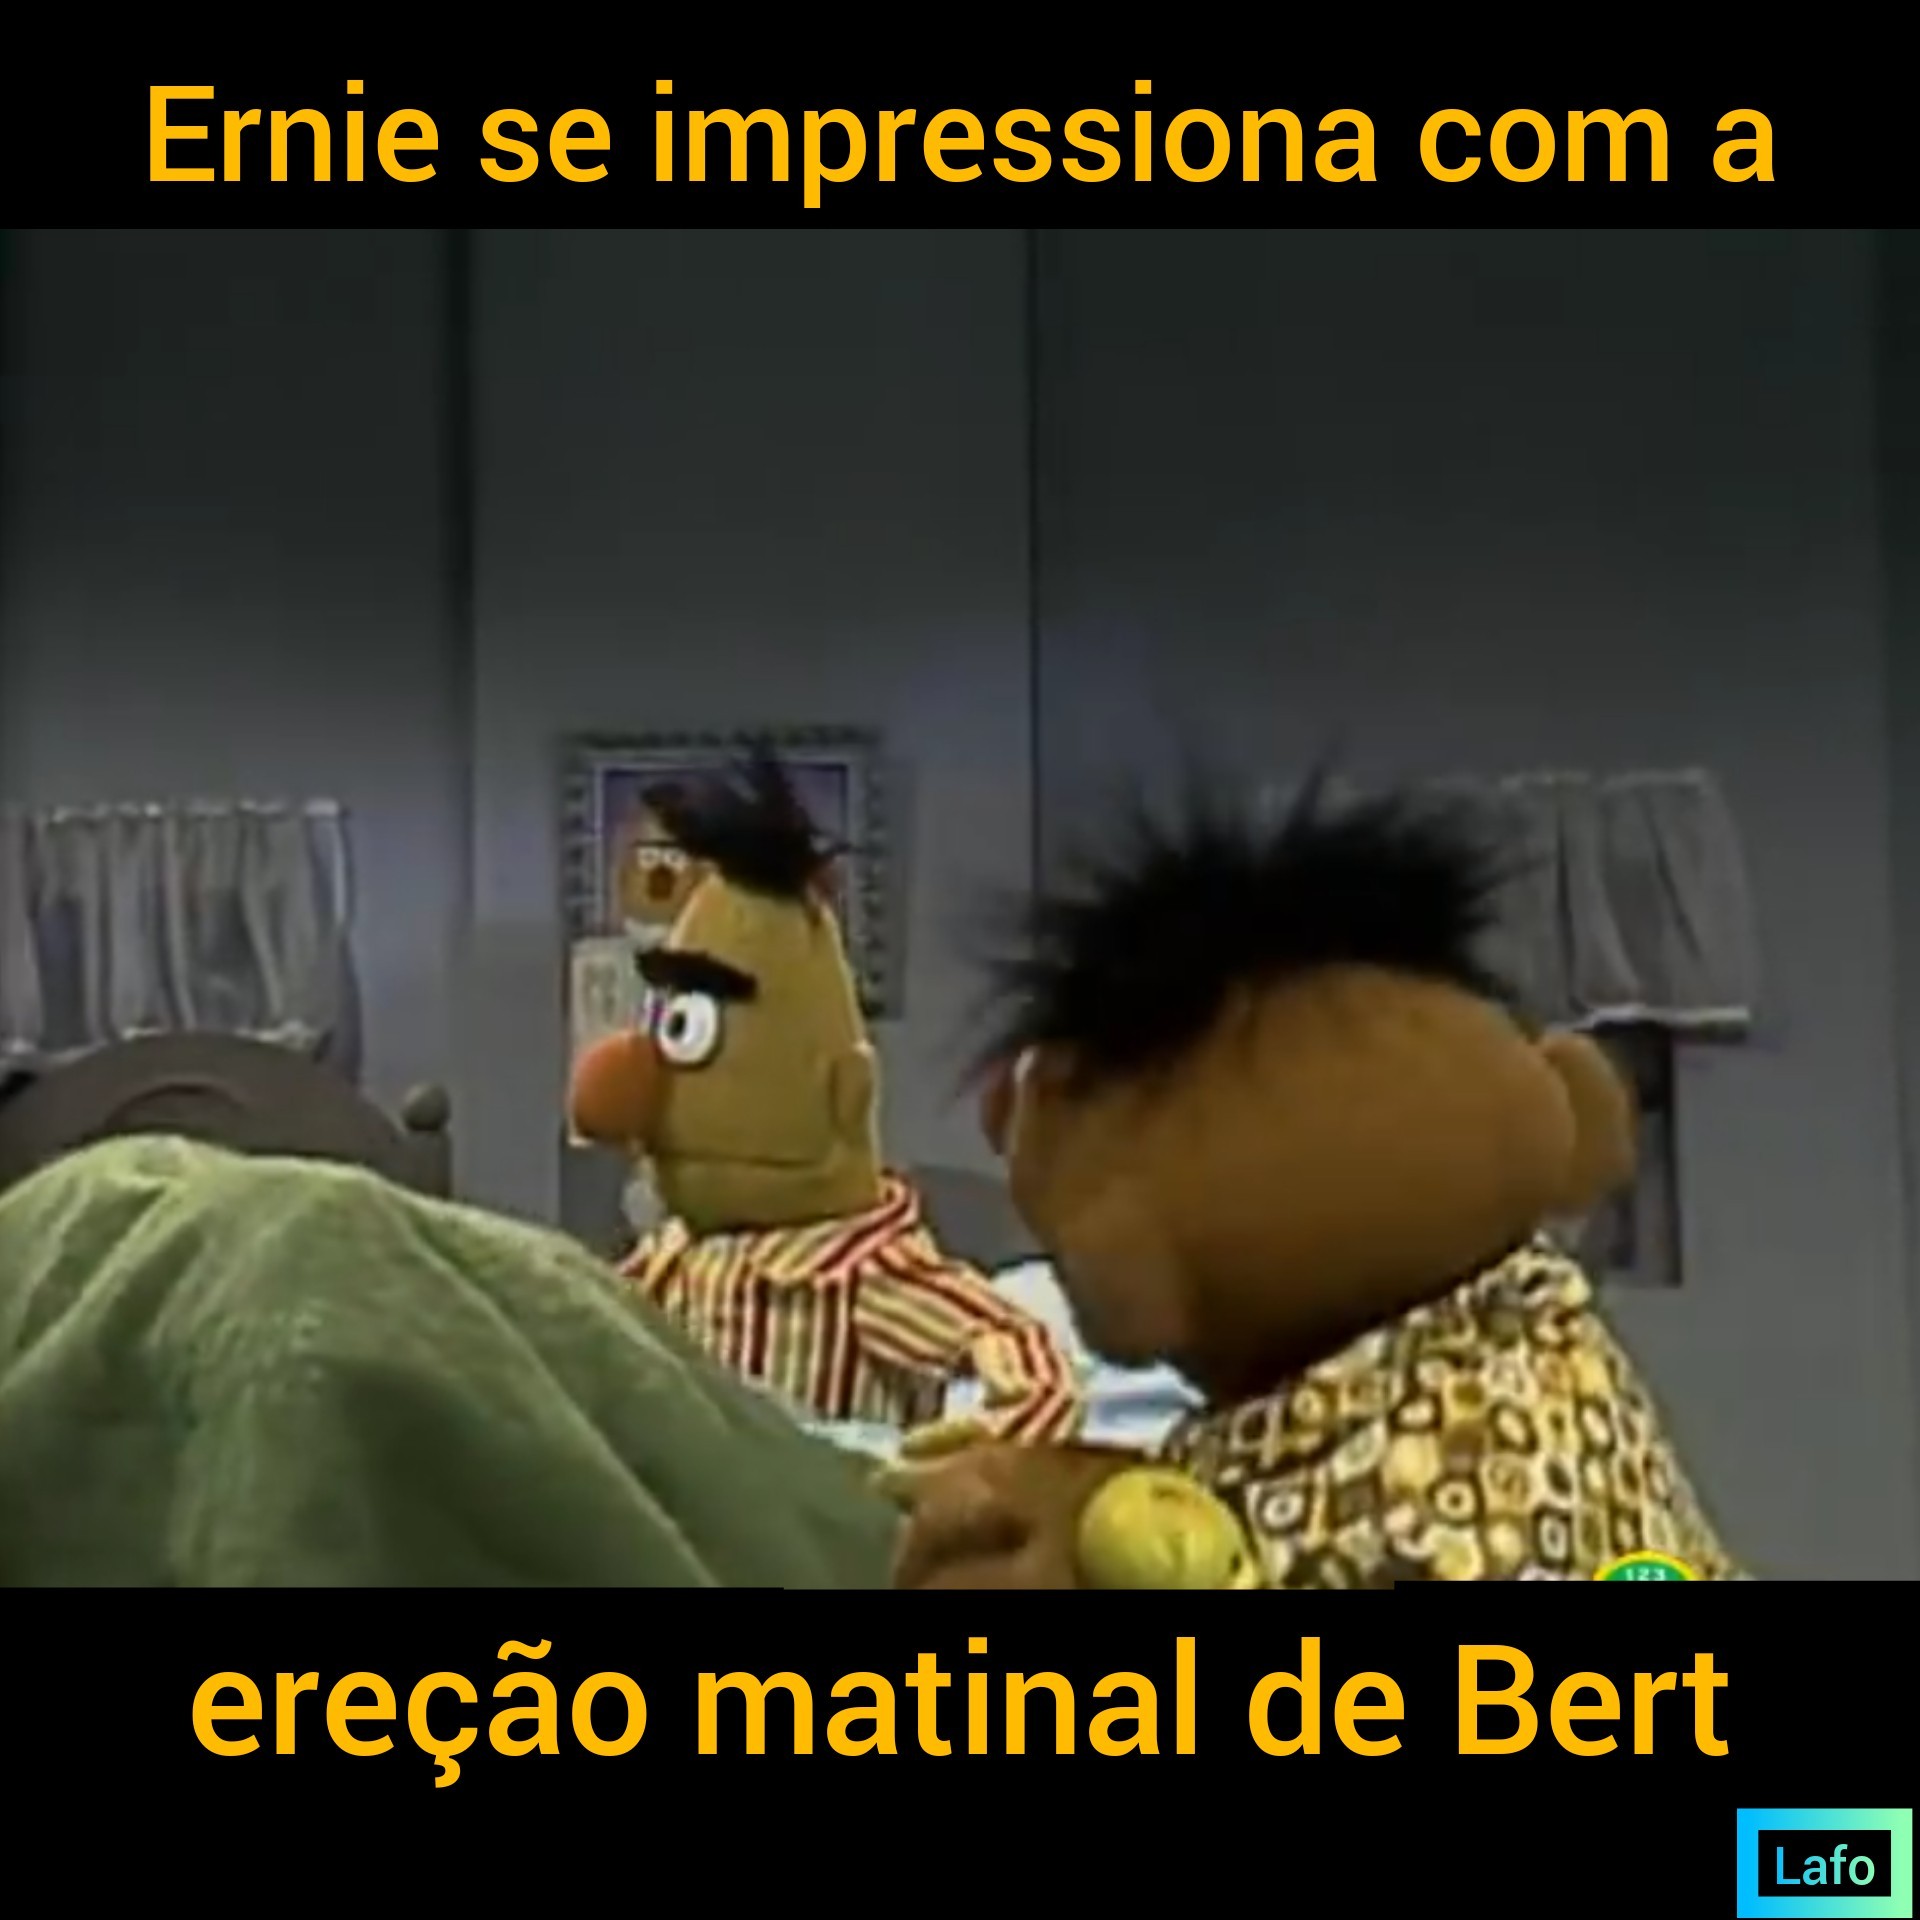 Hum, não sei Bert - meme